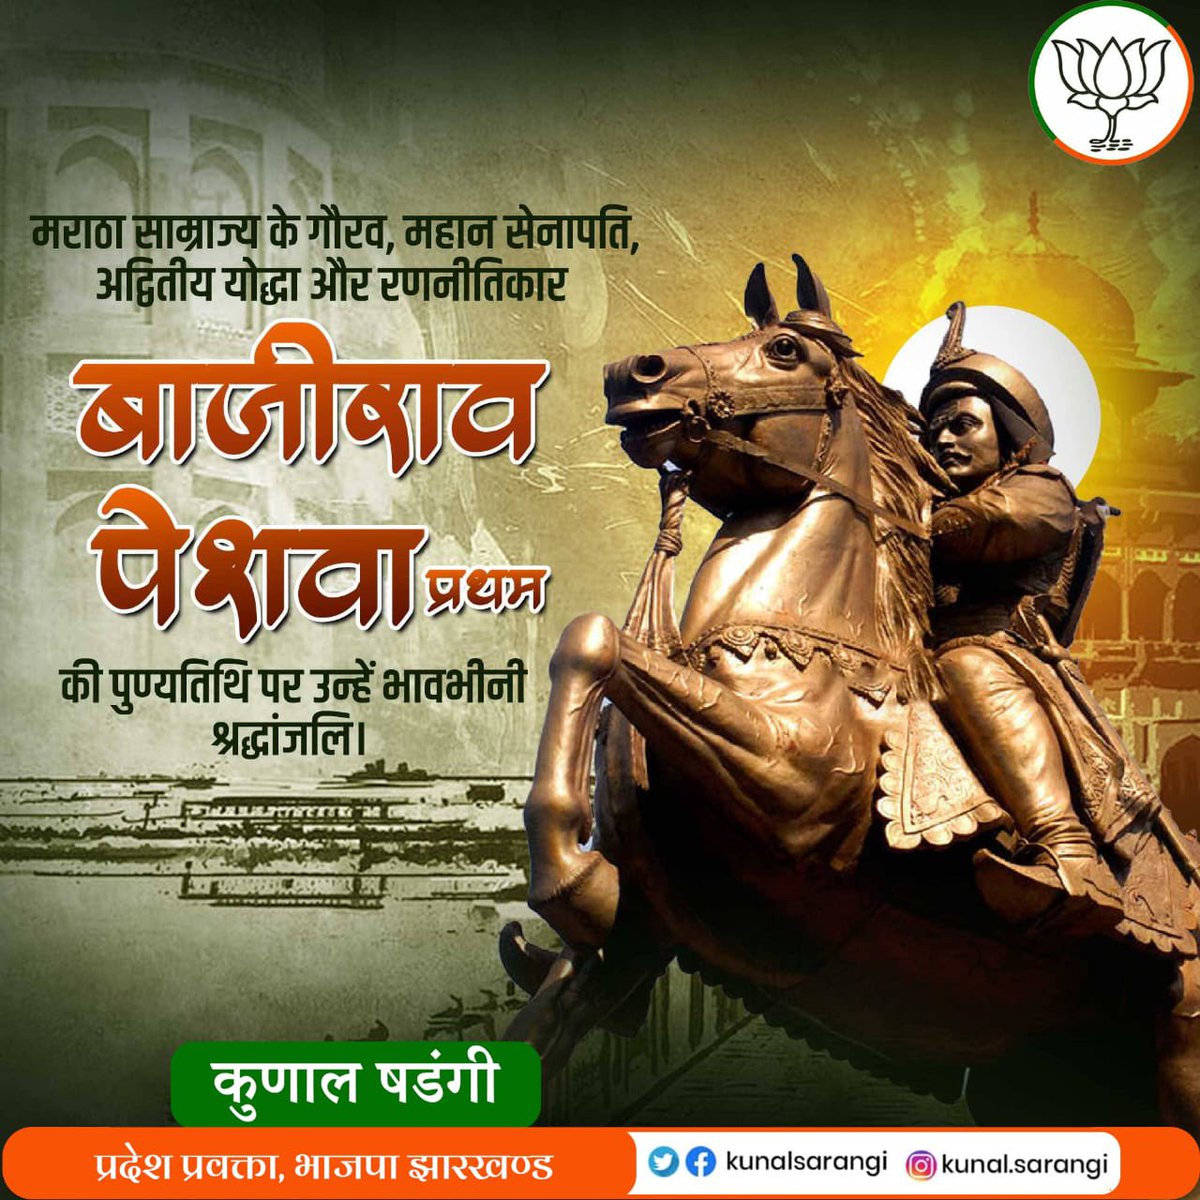 मराठा साम्राज्य के महान योद्धा बाजीराव पेशवा जी की पुण्यतिथि पर उन्हें विनम्र श्रद्धाजलि और सादर नमन। #बाजीराव_पेशवा #bajiraopeshwa